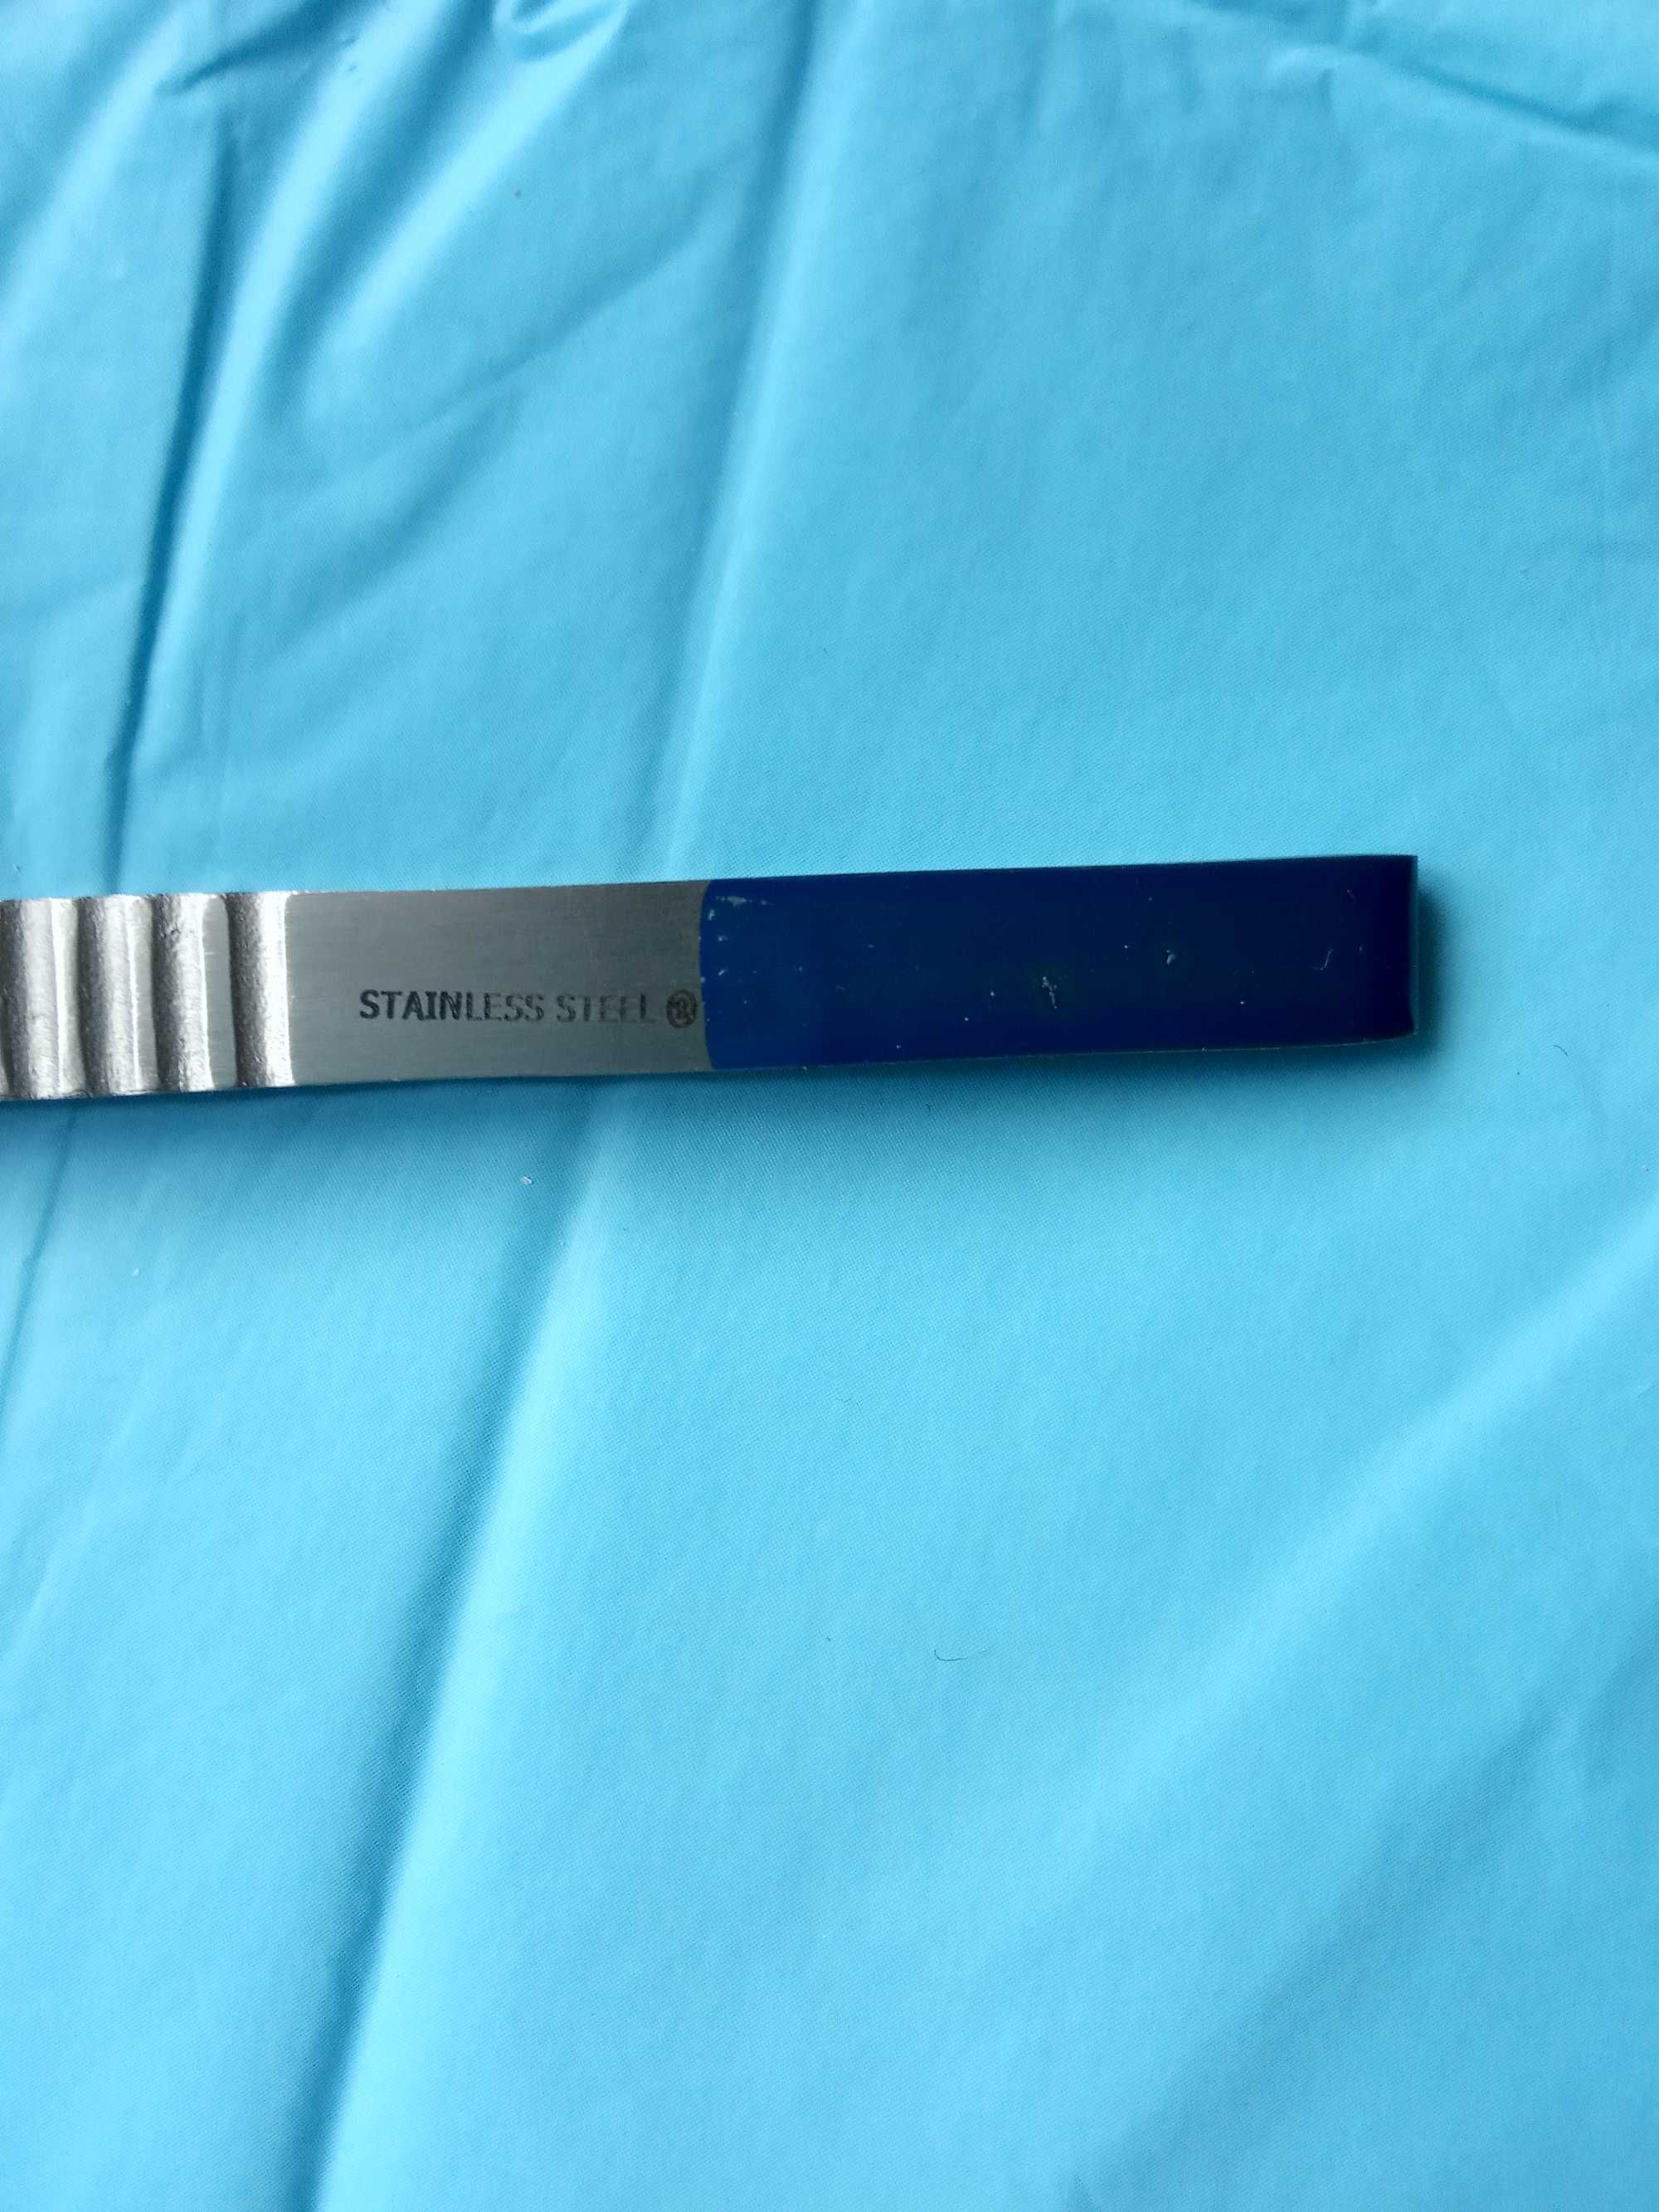 новый медицинский инструмент 13см пинцет ножницы скальпель хирургичес.